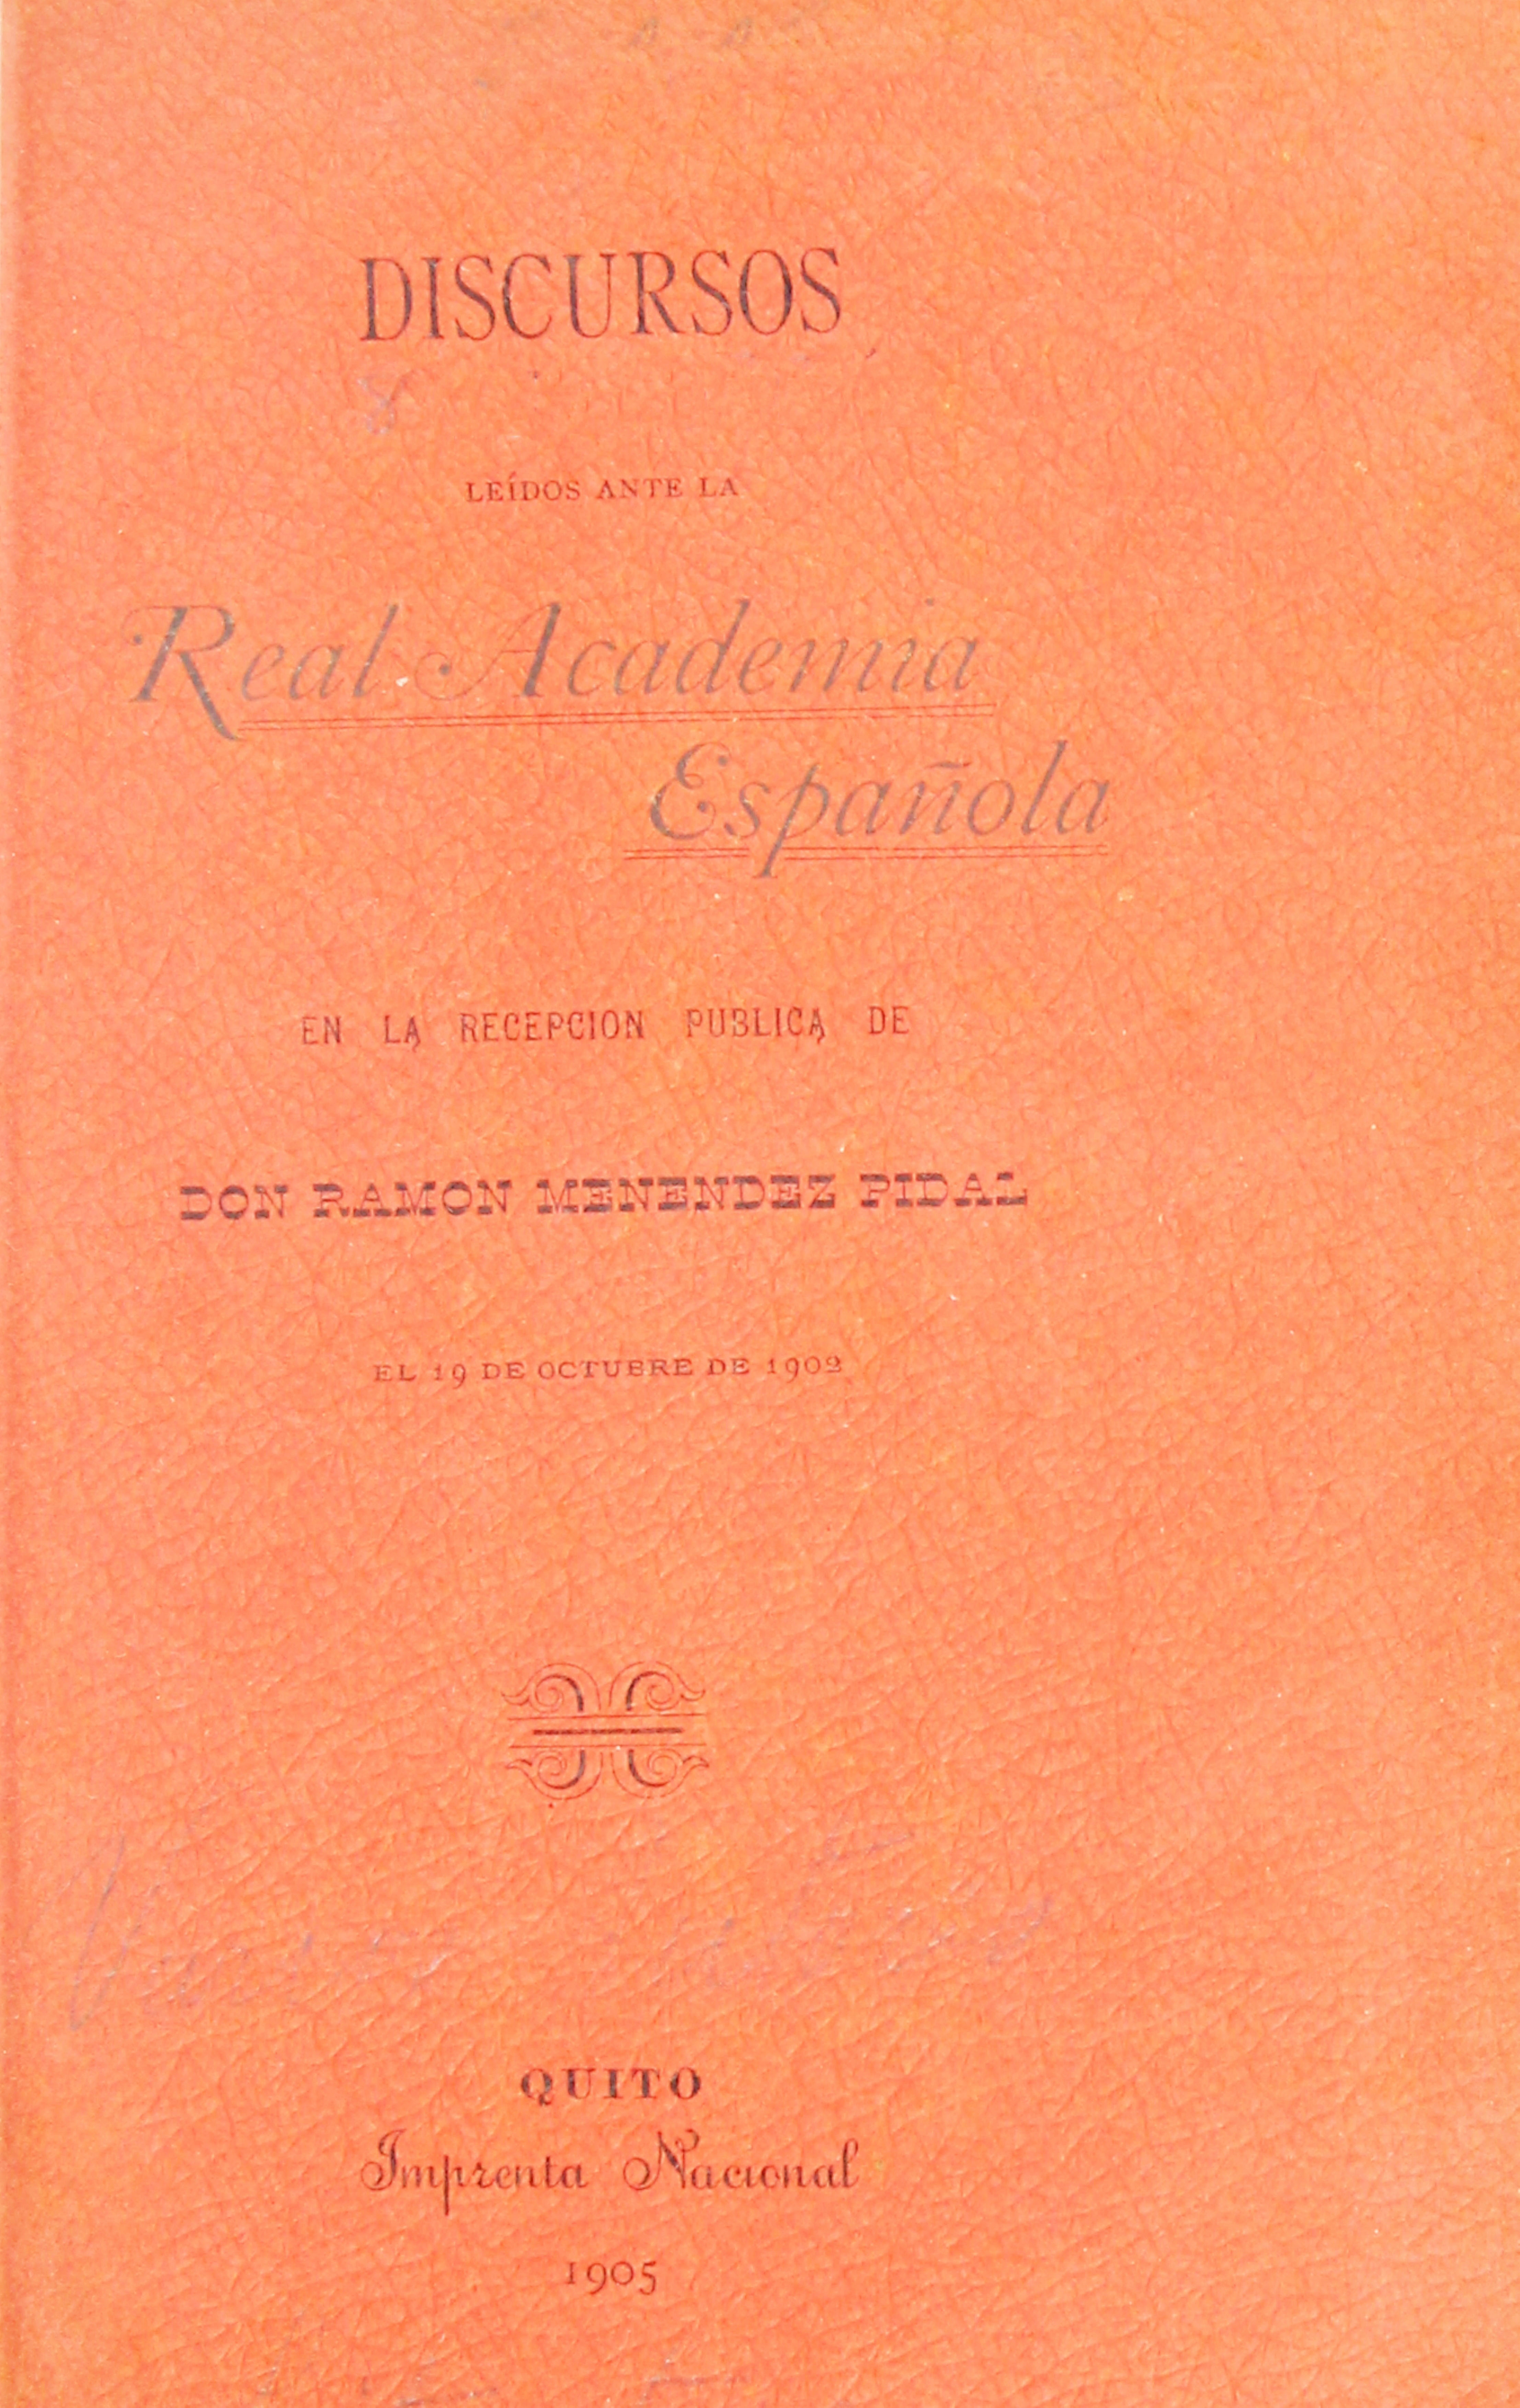 Discursos leídos ante la Real Academia Española en la recepción pública de D. Ramón Menéndez Pidal el 19 de Octubre de 1902.